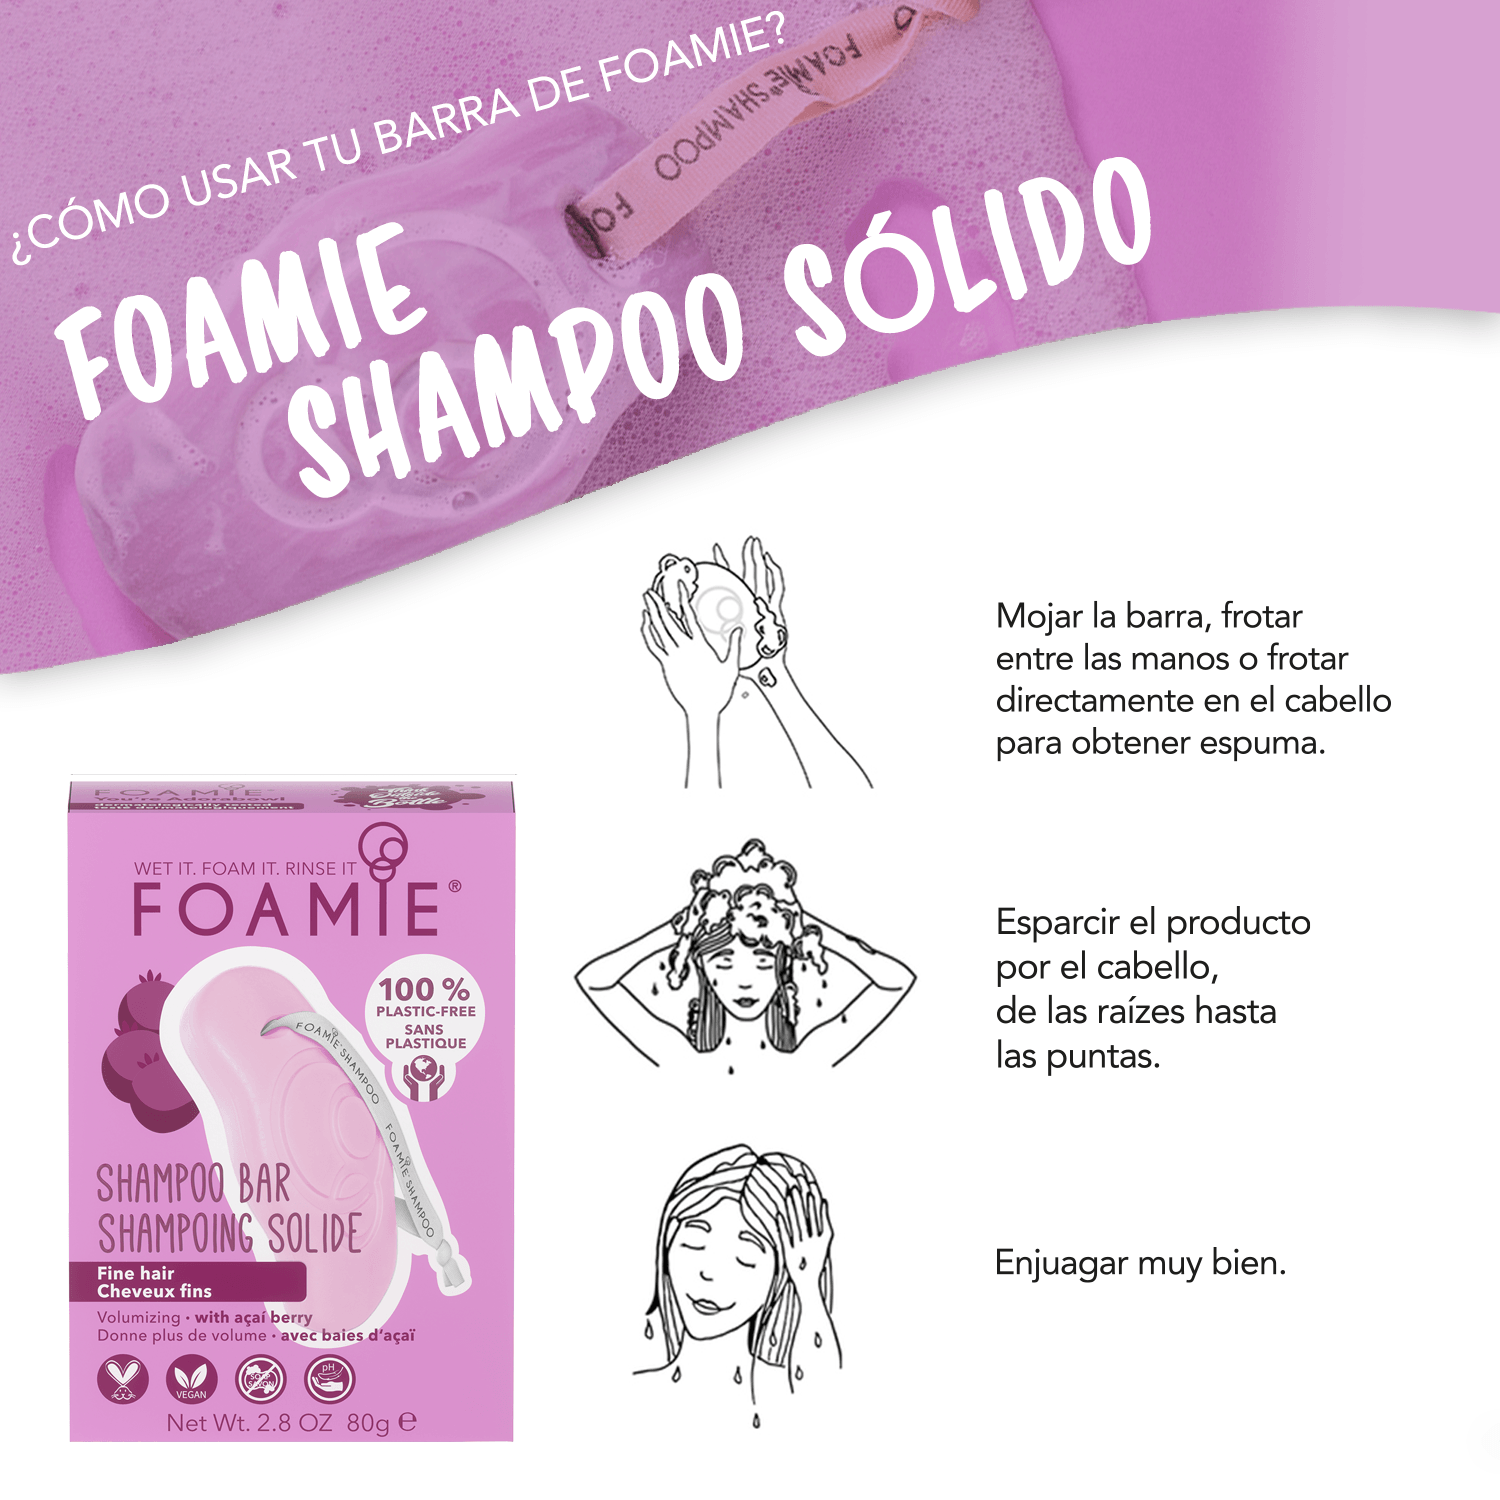 Shampoo de Baya de Acaí para cabello delgado & Jabonera Sustentable - Foamie